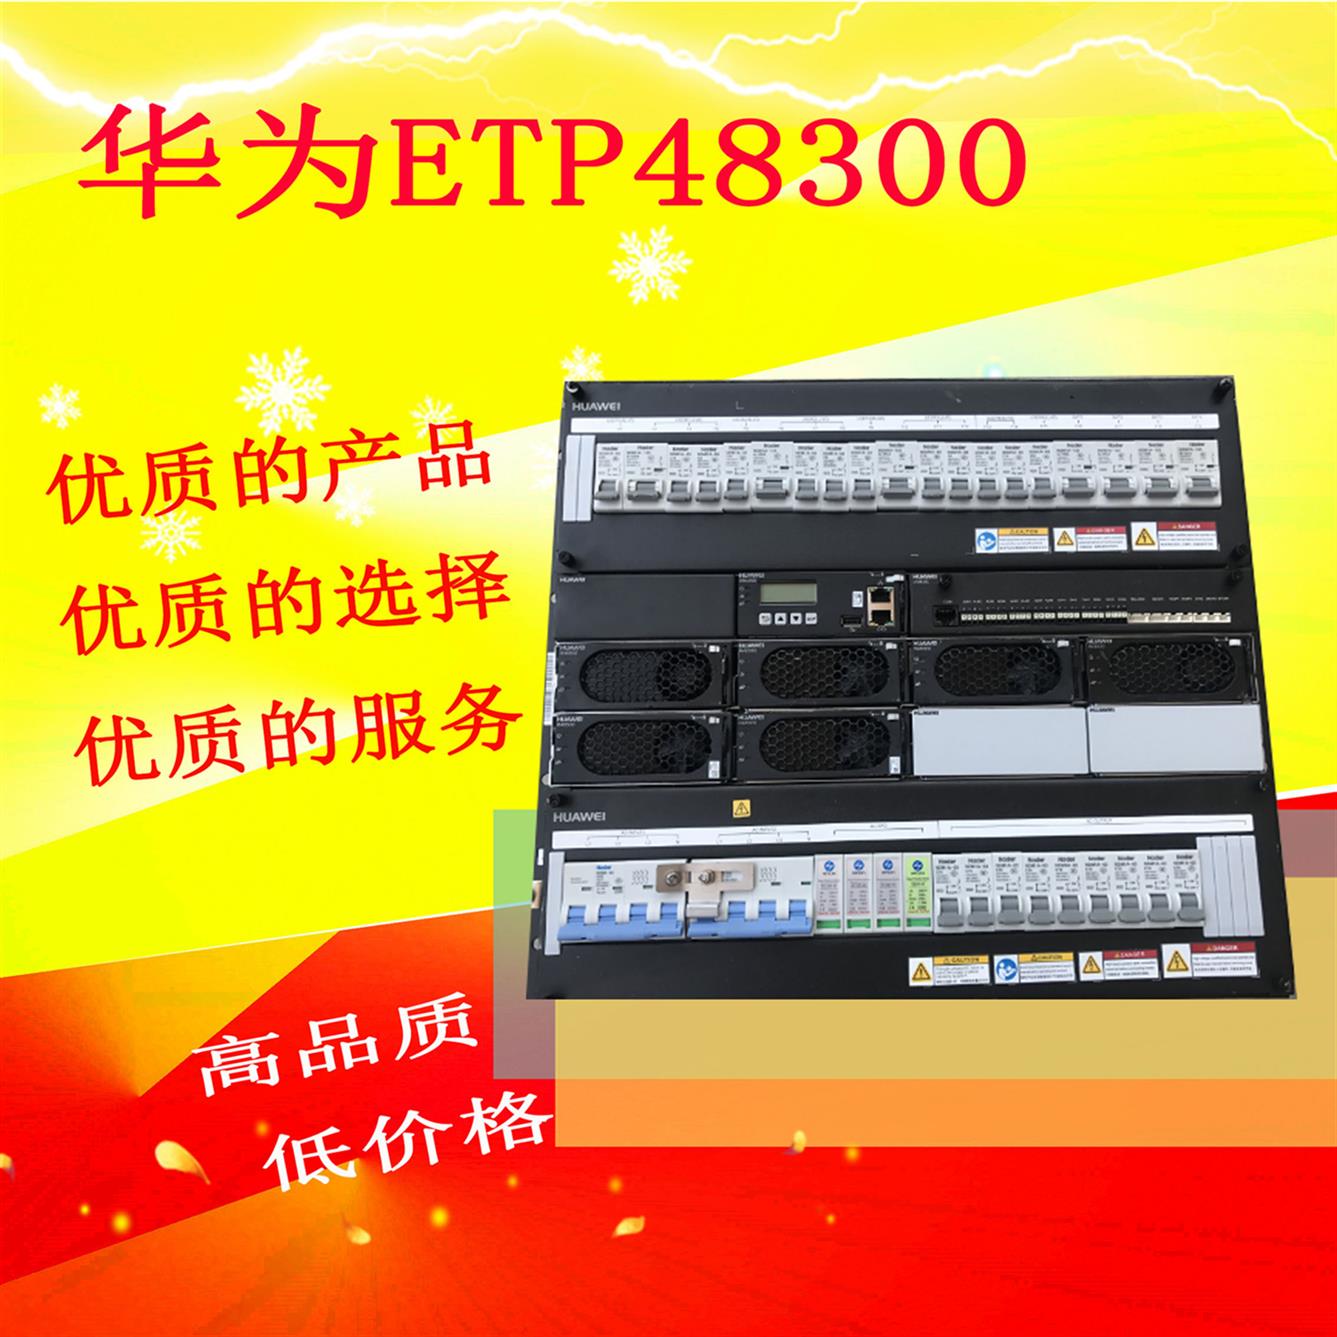 江门华为ETP48300A嵌入式通信电源批发